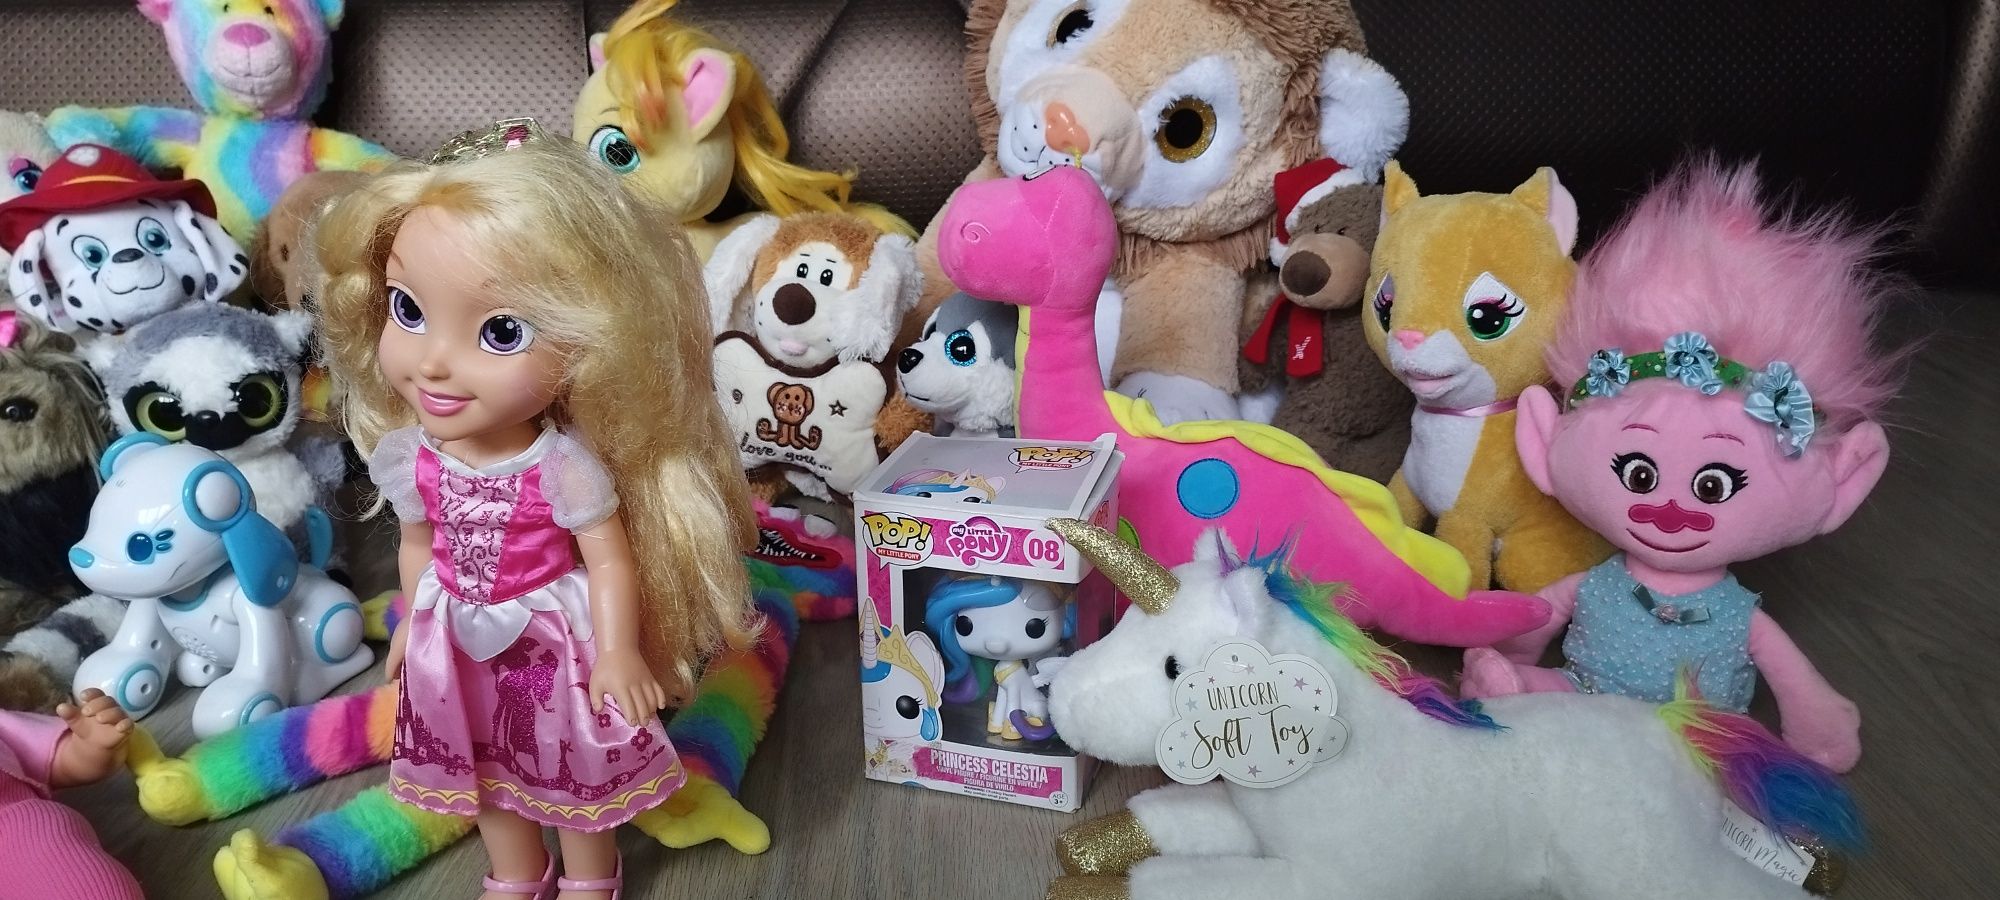 Много разных мягких игрушек,куклы